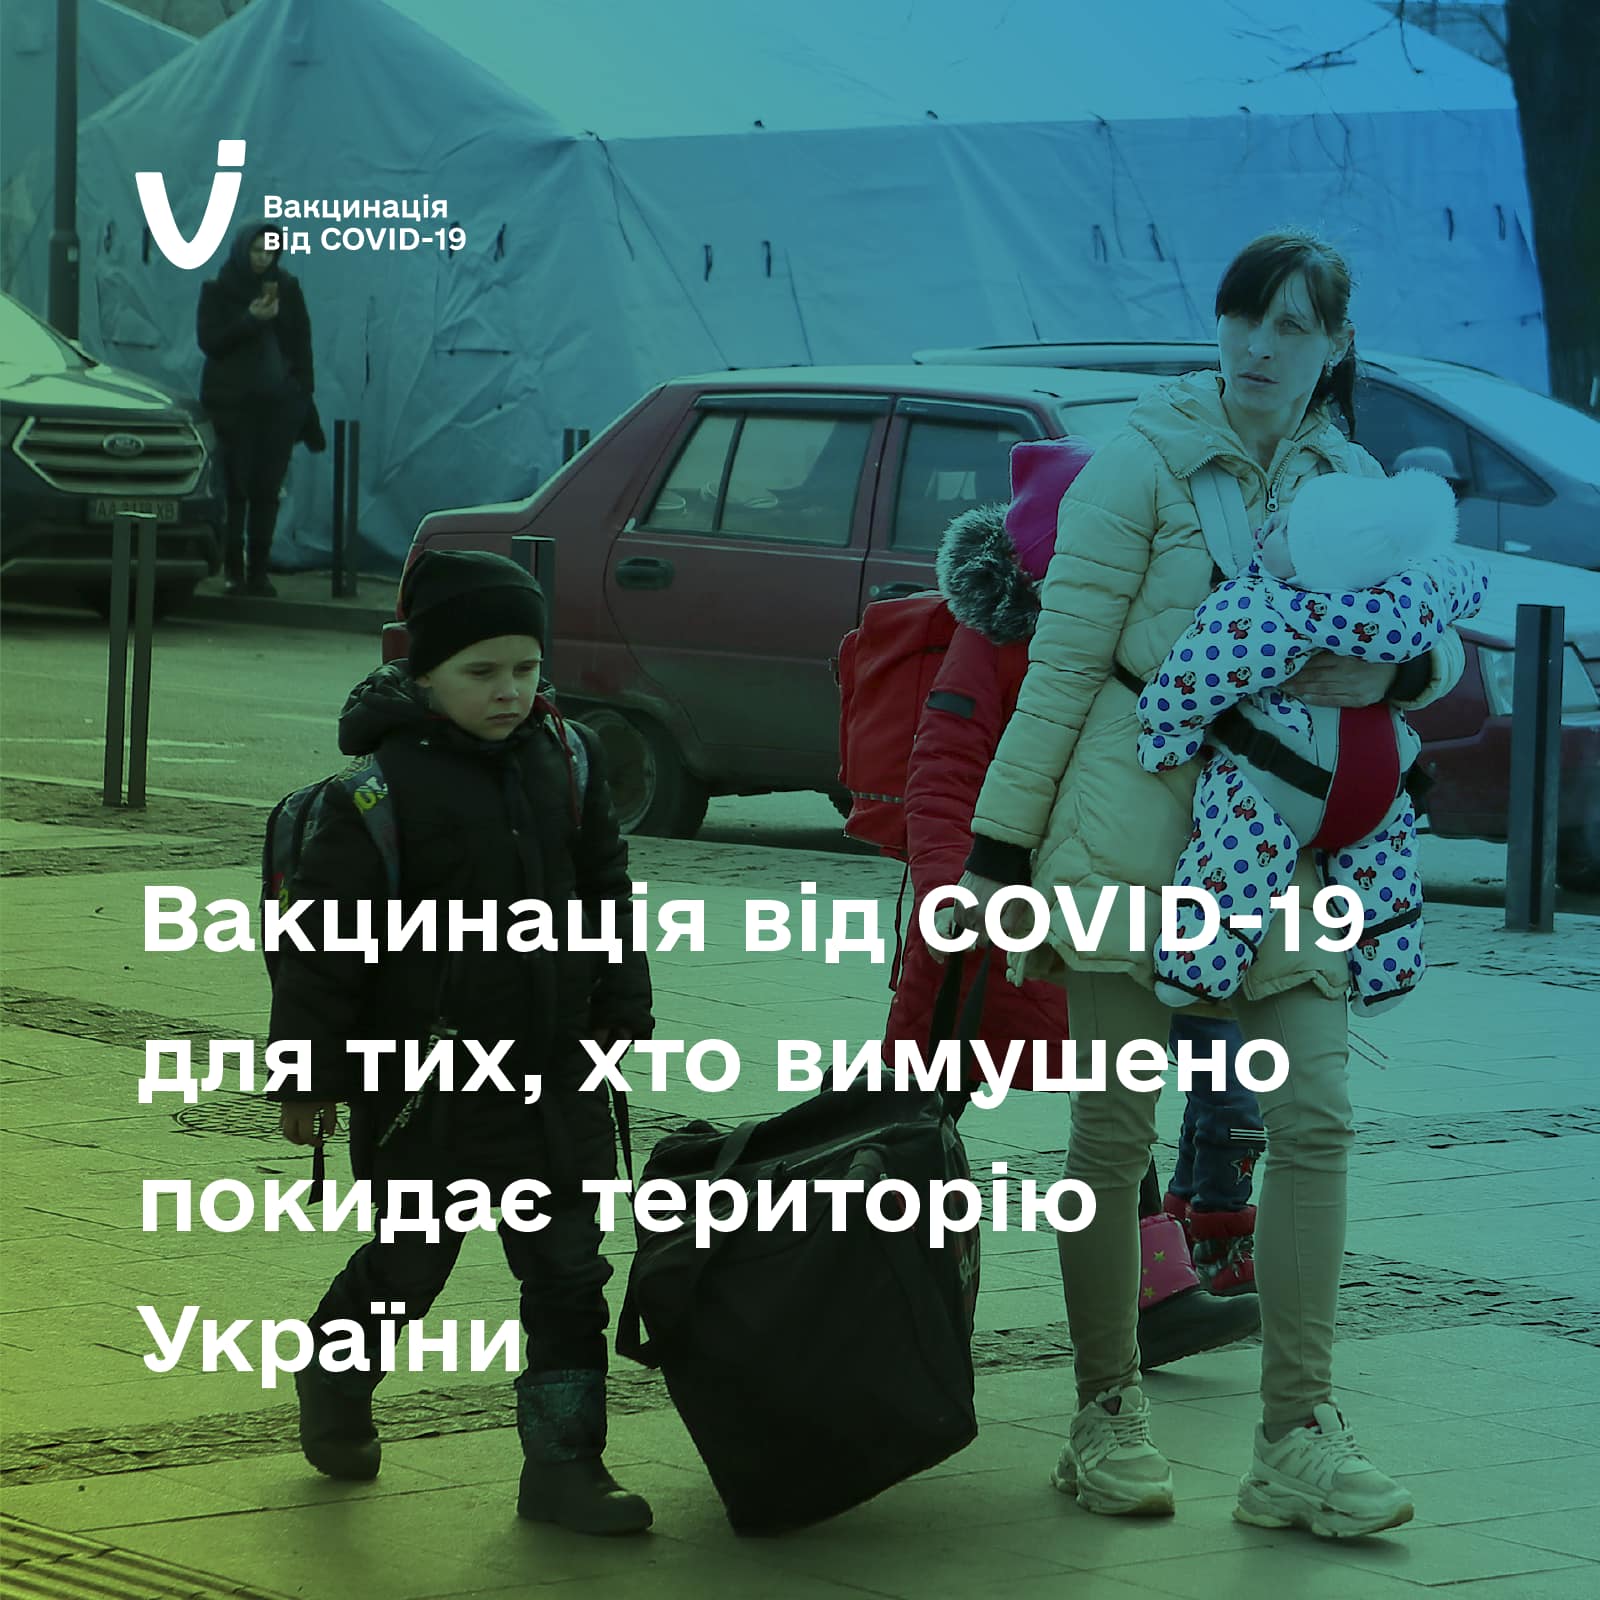 МОЗ інформує про вакцинацію проти COVID-19 українців, які вимушено покидають територію України